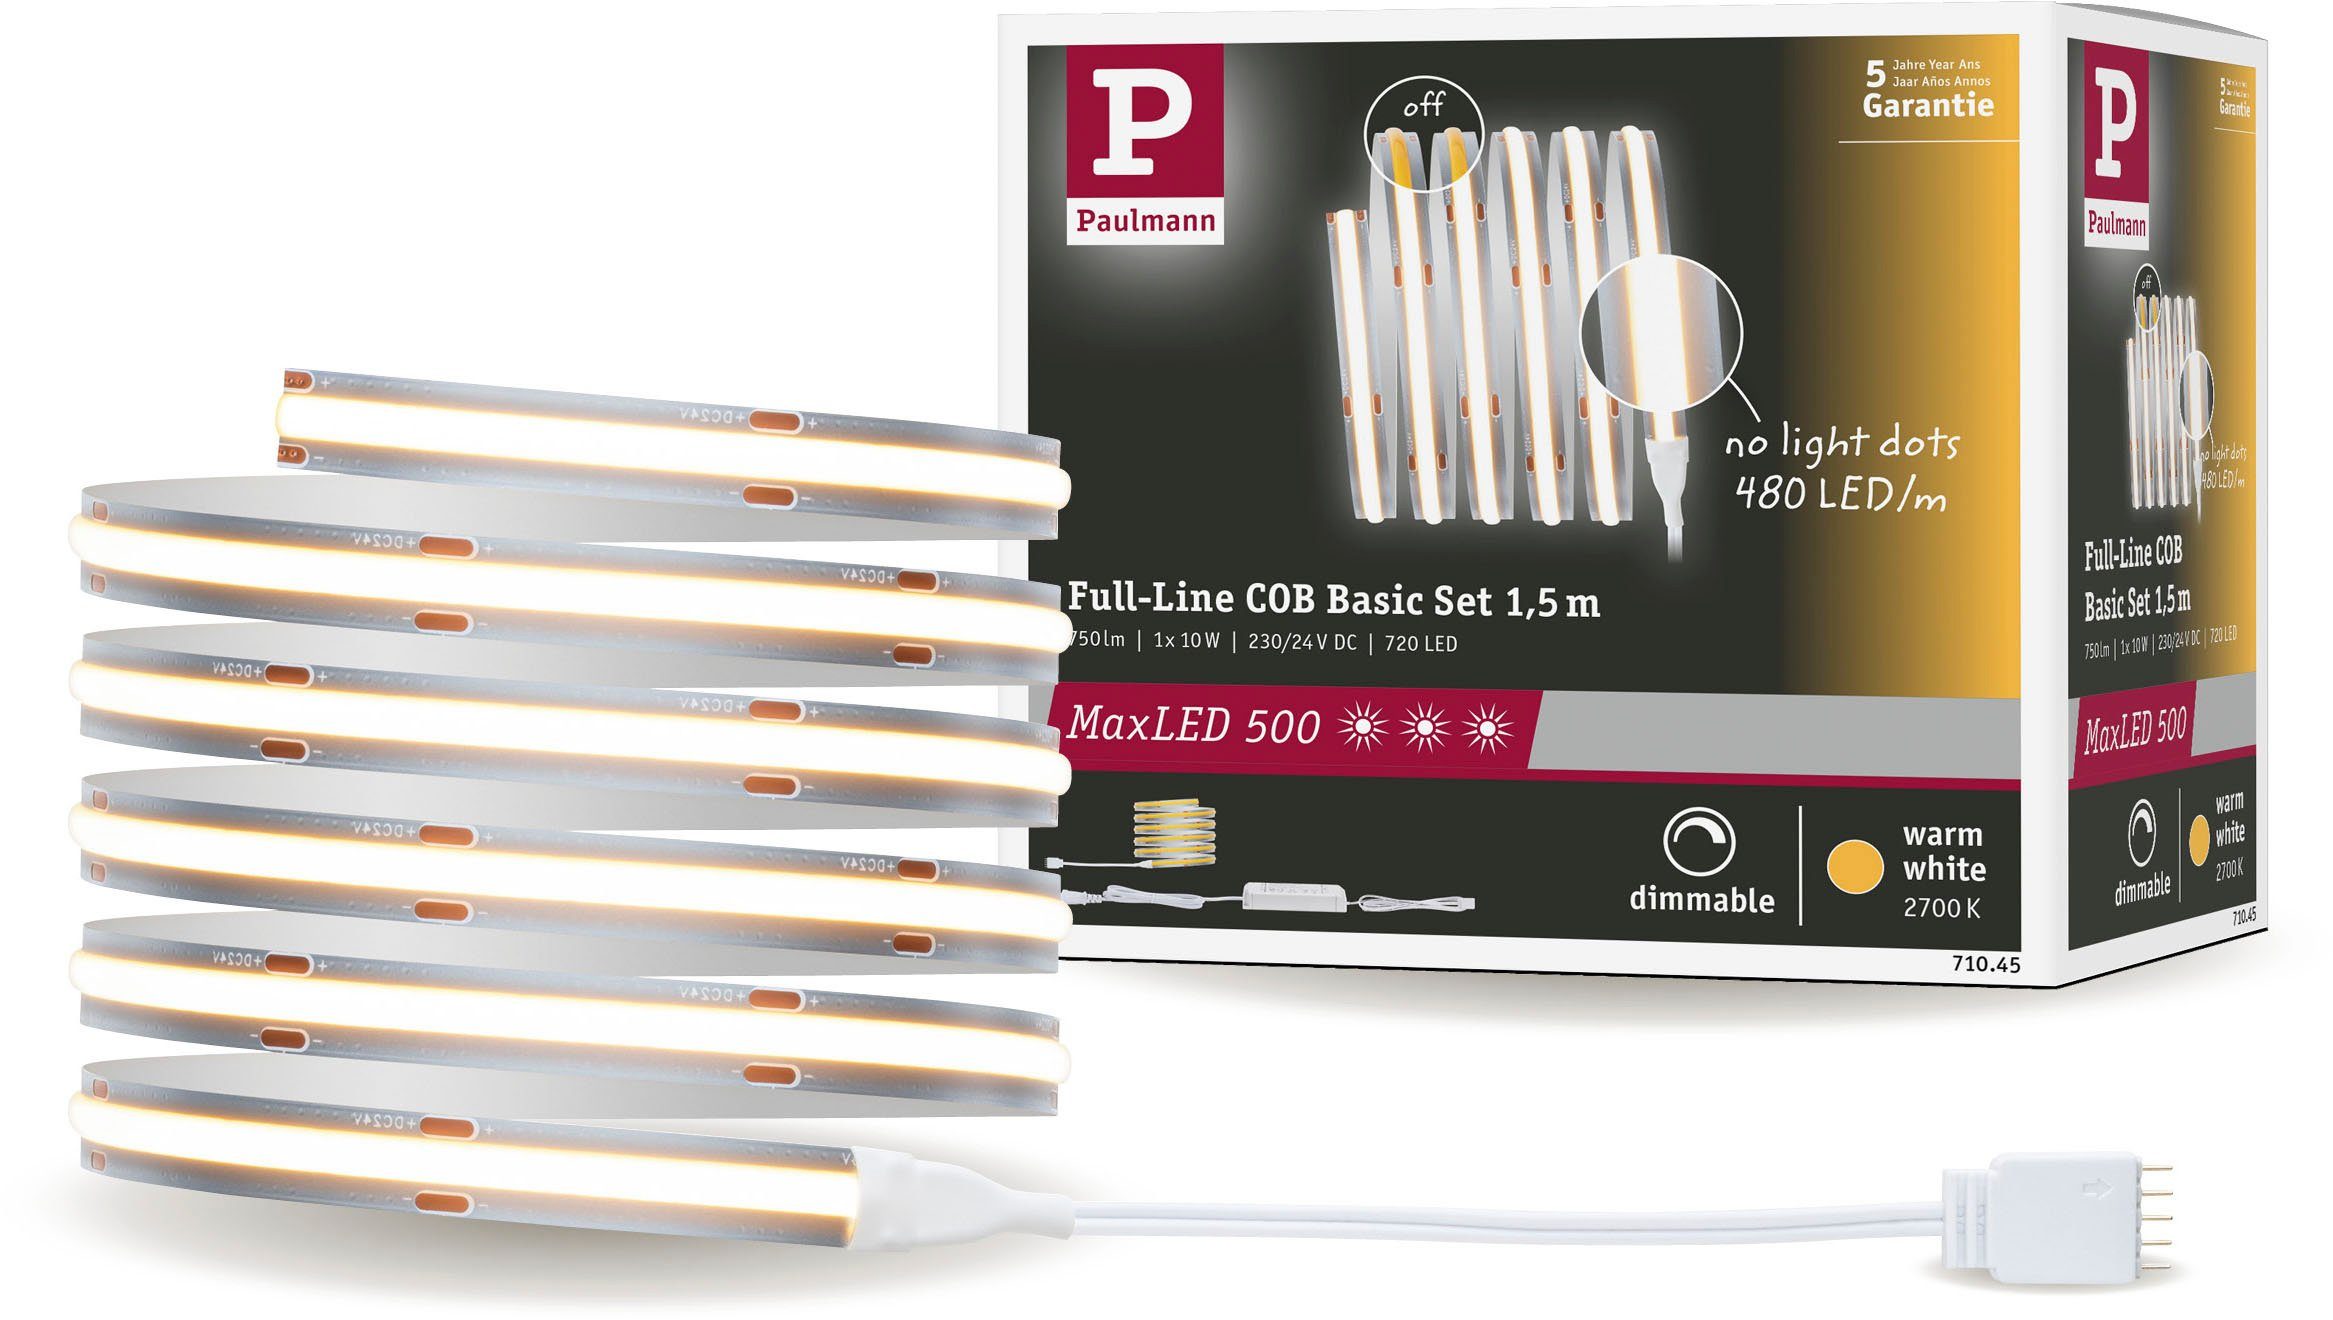 Kostenloser Online- und Ladenverkauf. Paulmann LED-Streifen MaxLED 500 Full-Line Basisset 1-flammig, 750lm 2700K, 480LED Basisset 1,5m, COB warmweiß10W